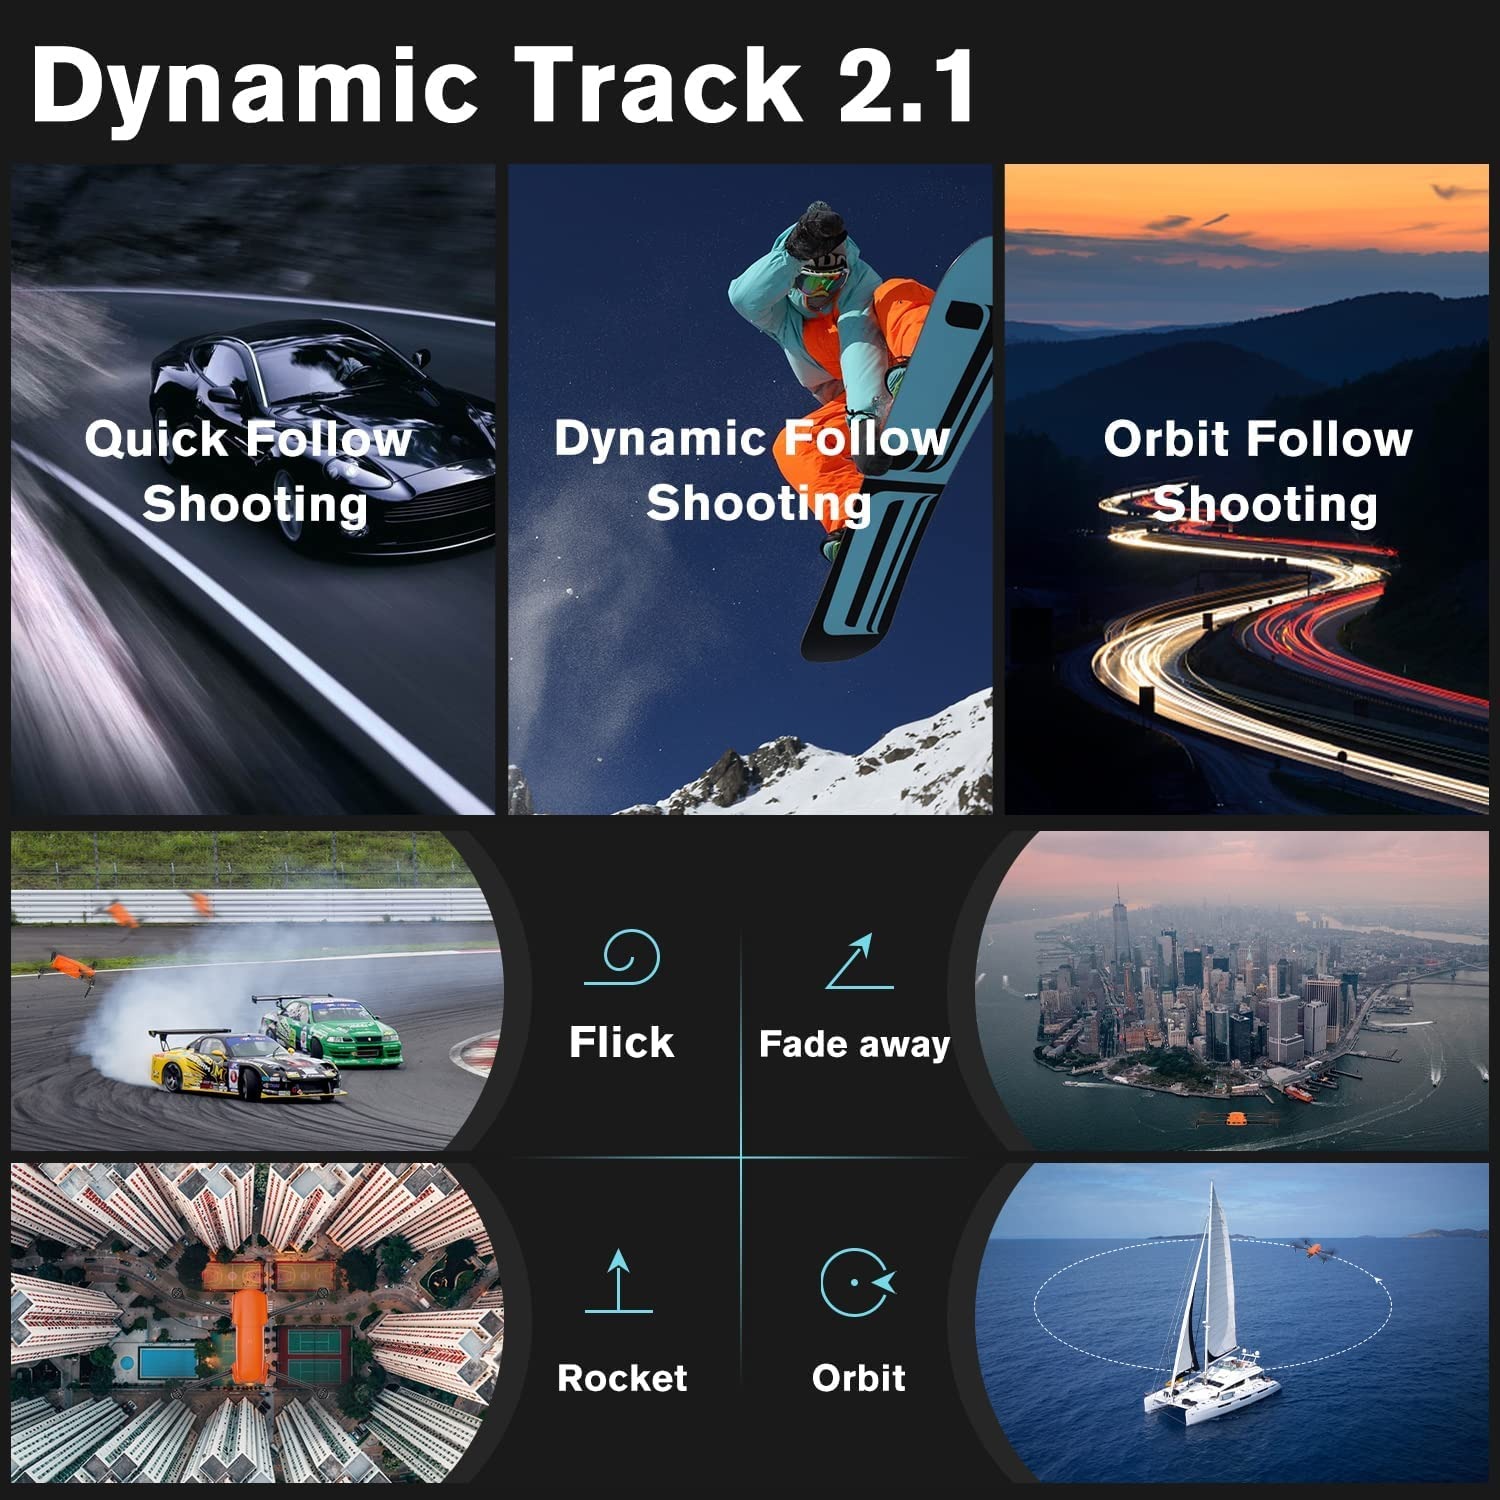 Dynamic Track 2.1